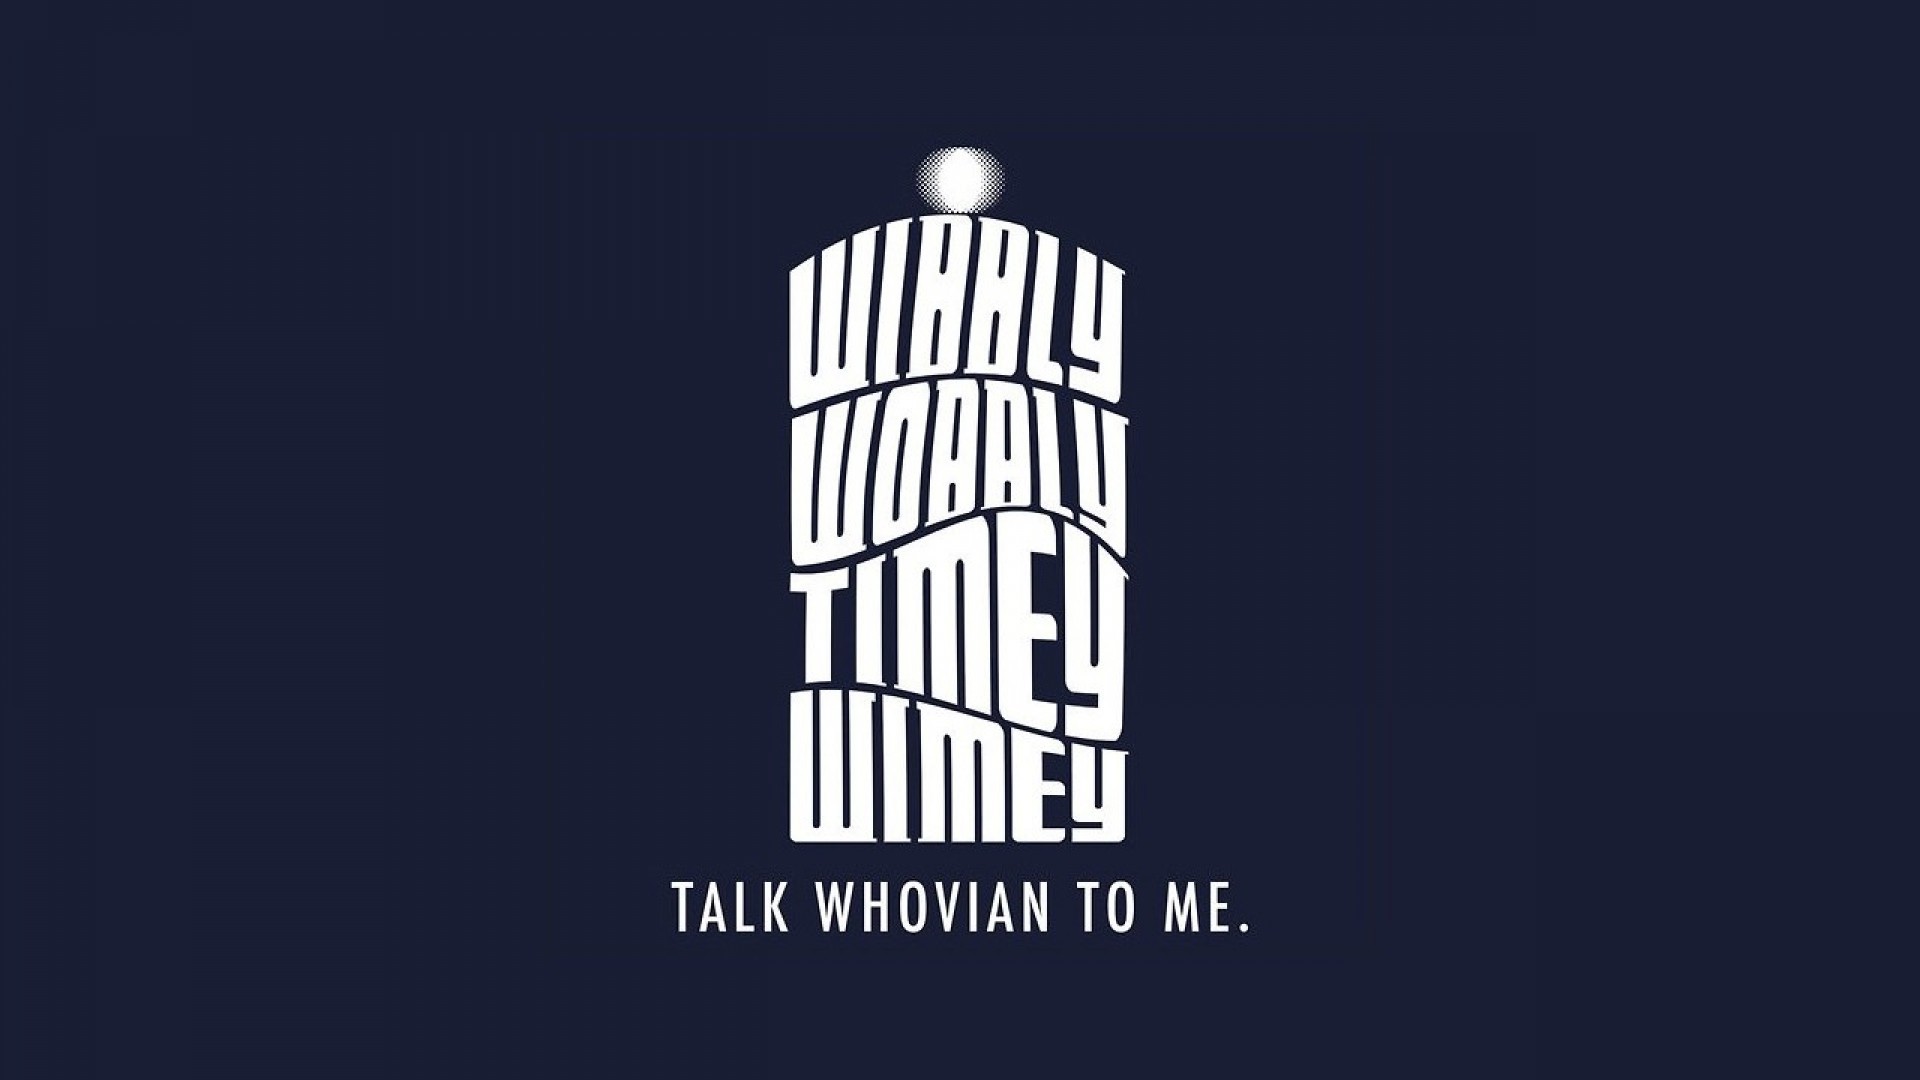 Doctor Who Tardis TV TARDIS Shows HD Wallpapers, Desktop | Free Wallpapers  | Pinterest | Tardis wallpaper, Wallpaper desktop and Wallpaper